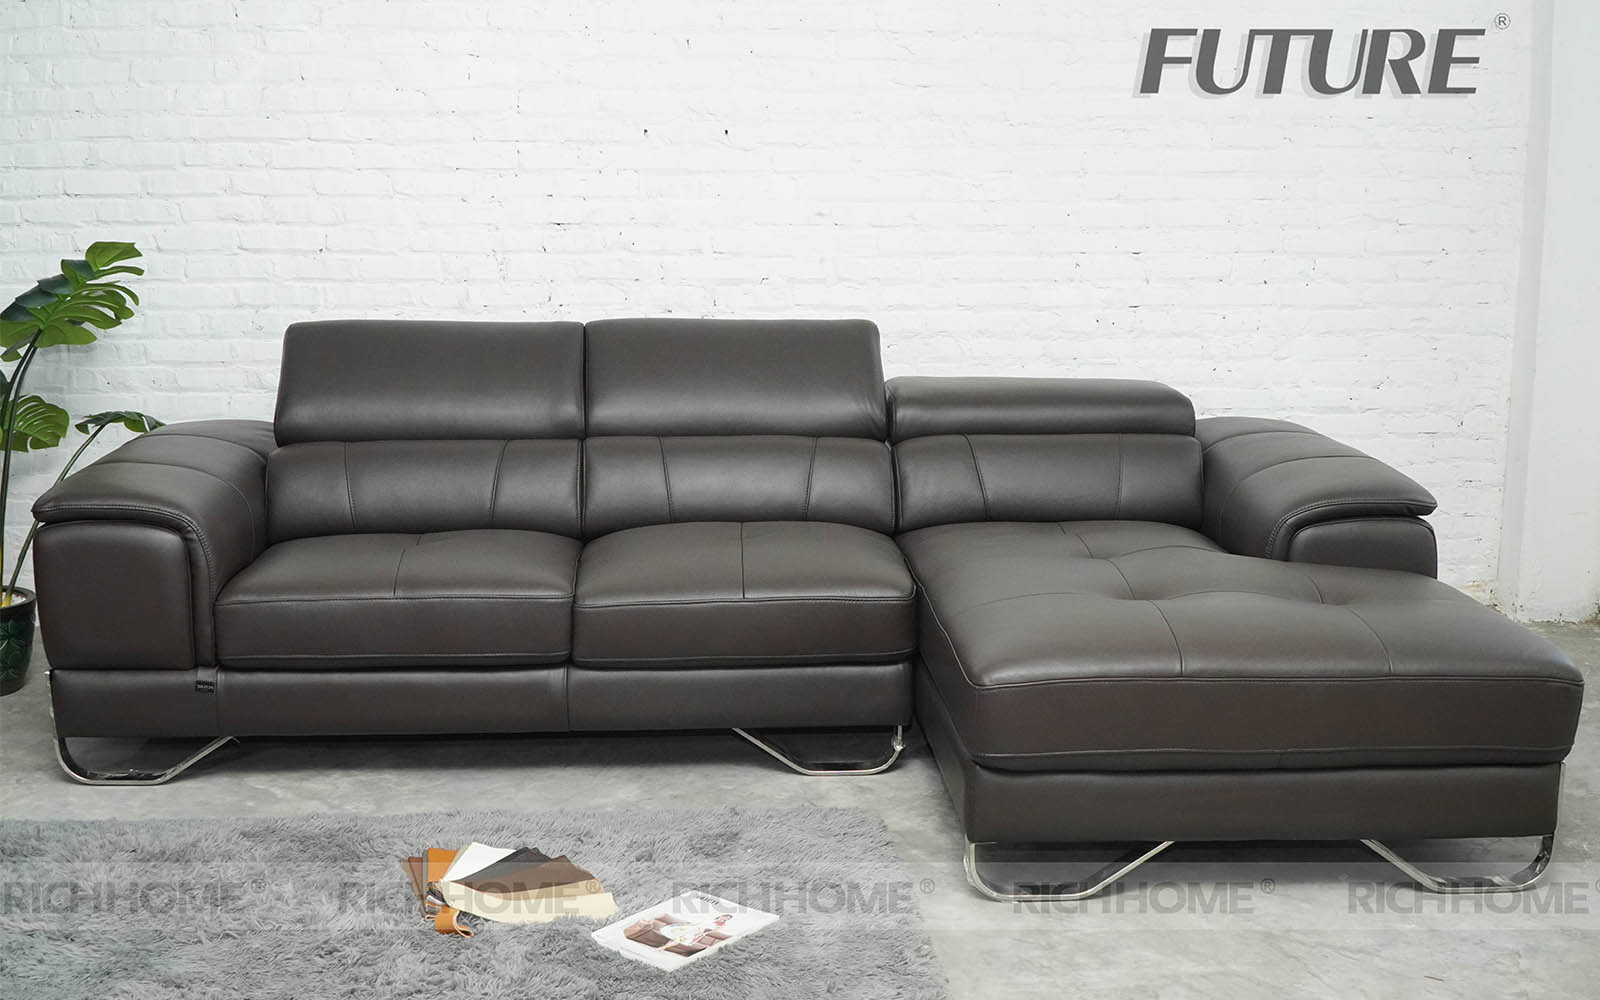 20 mẫu ghế sofa góc da màu đen đẹp cho phòng khách - Ảnh 6